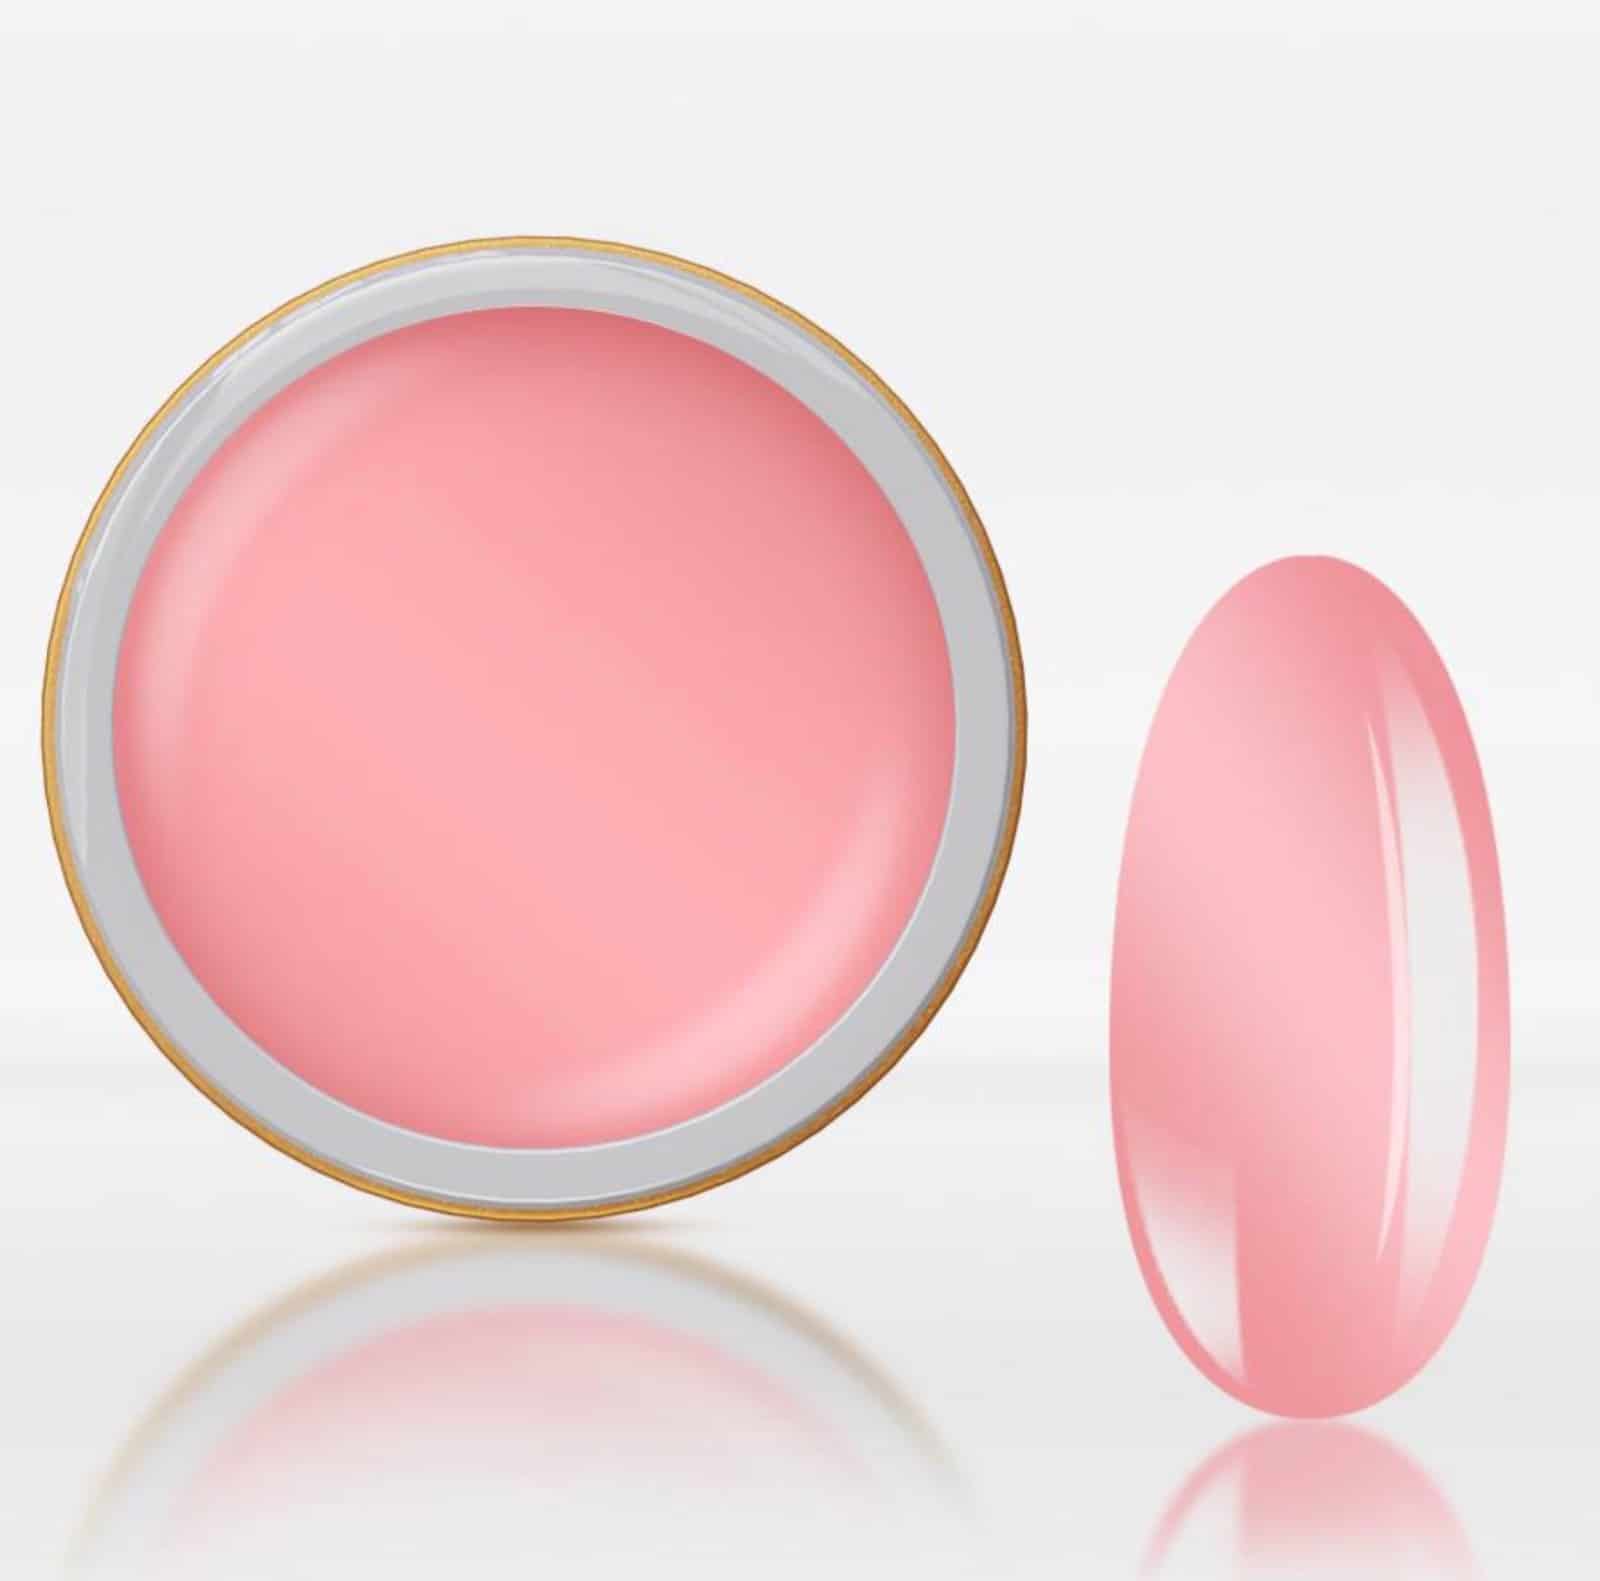 Gel de Construção Delicate Pink com fibra